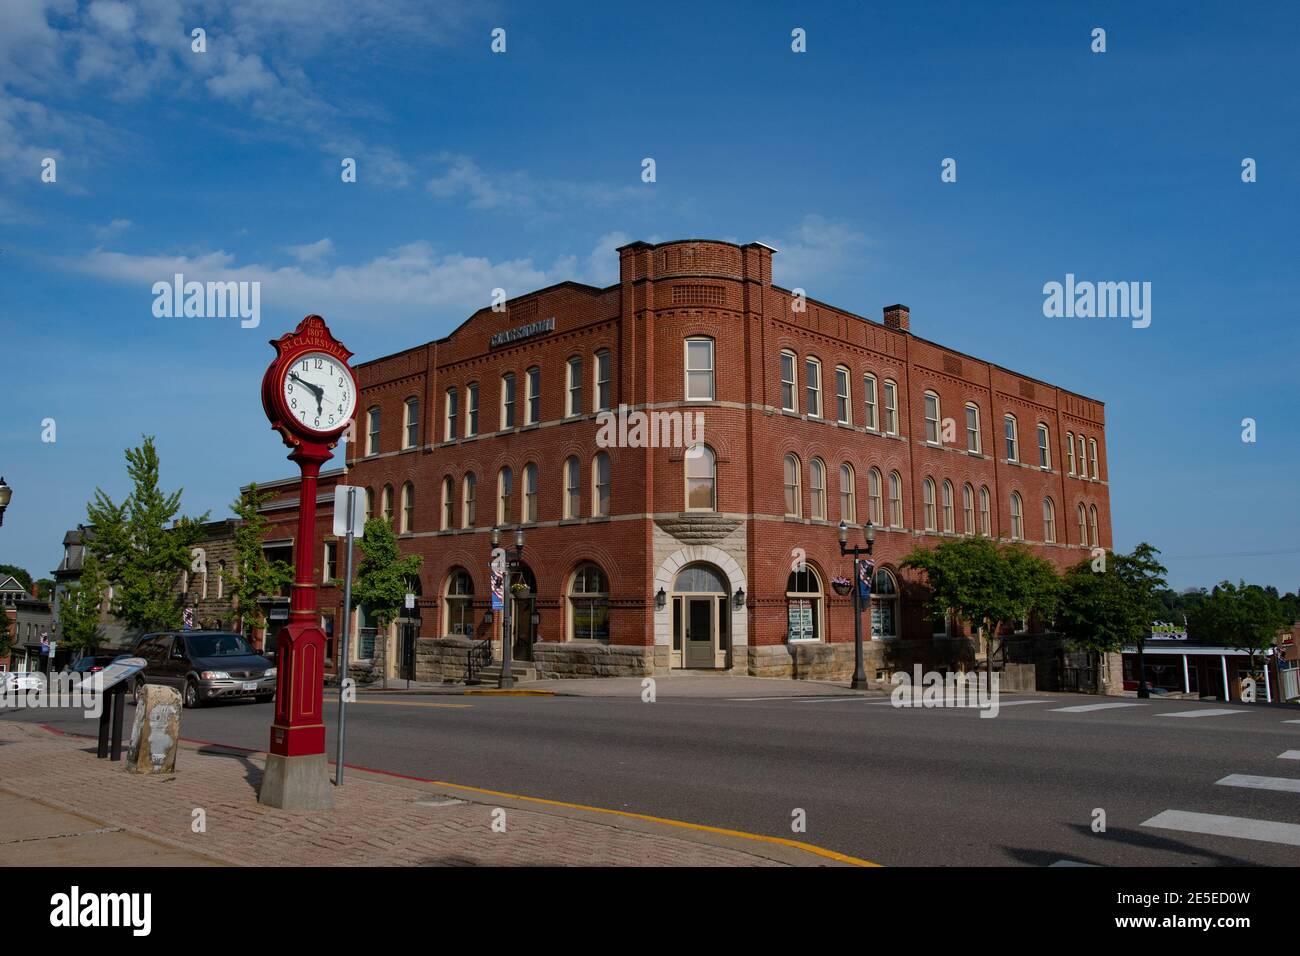 St. Clairsville, Ohio/USA-7 juin 2018 : bâtiment historique Clarendon en 1880 sur East main Street à St. Clairsville. Banque D'Images